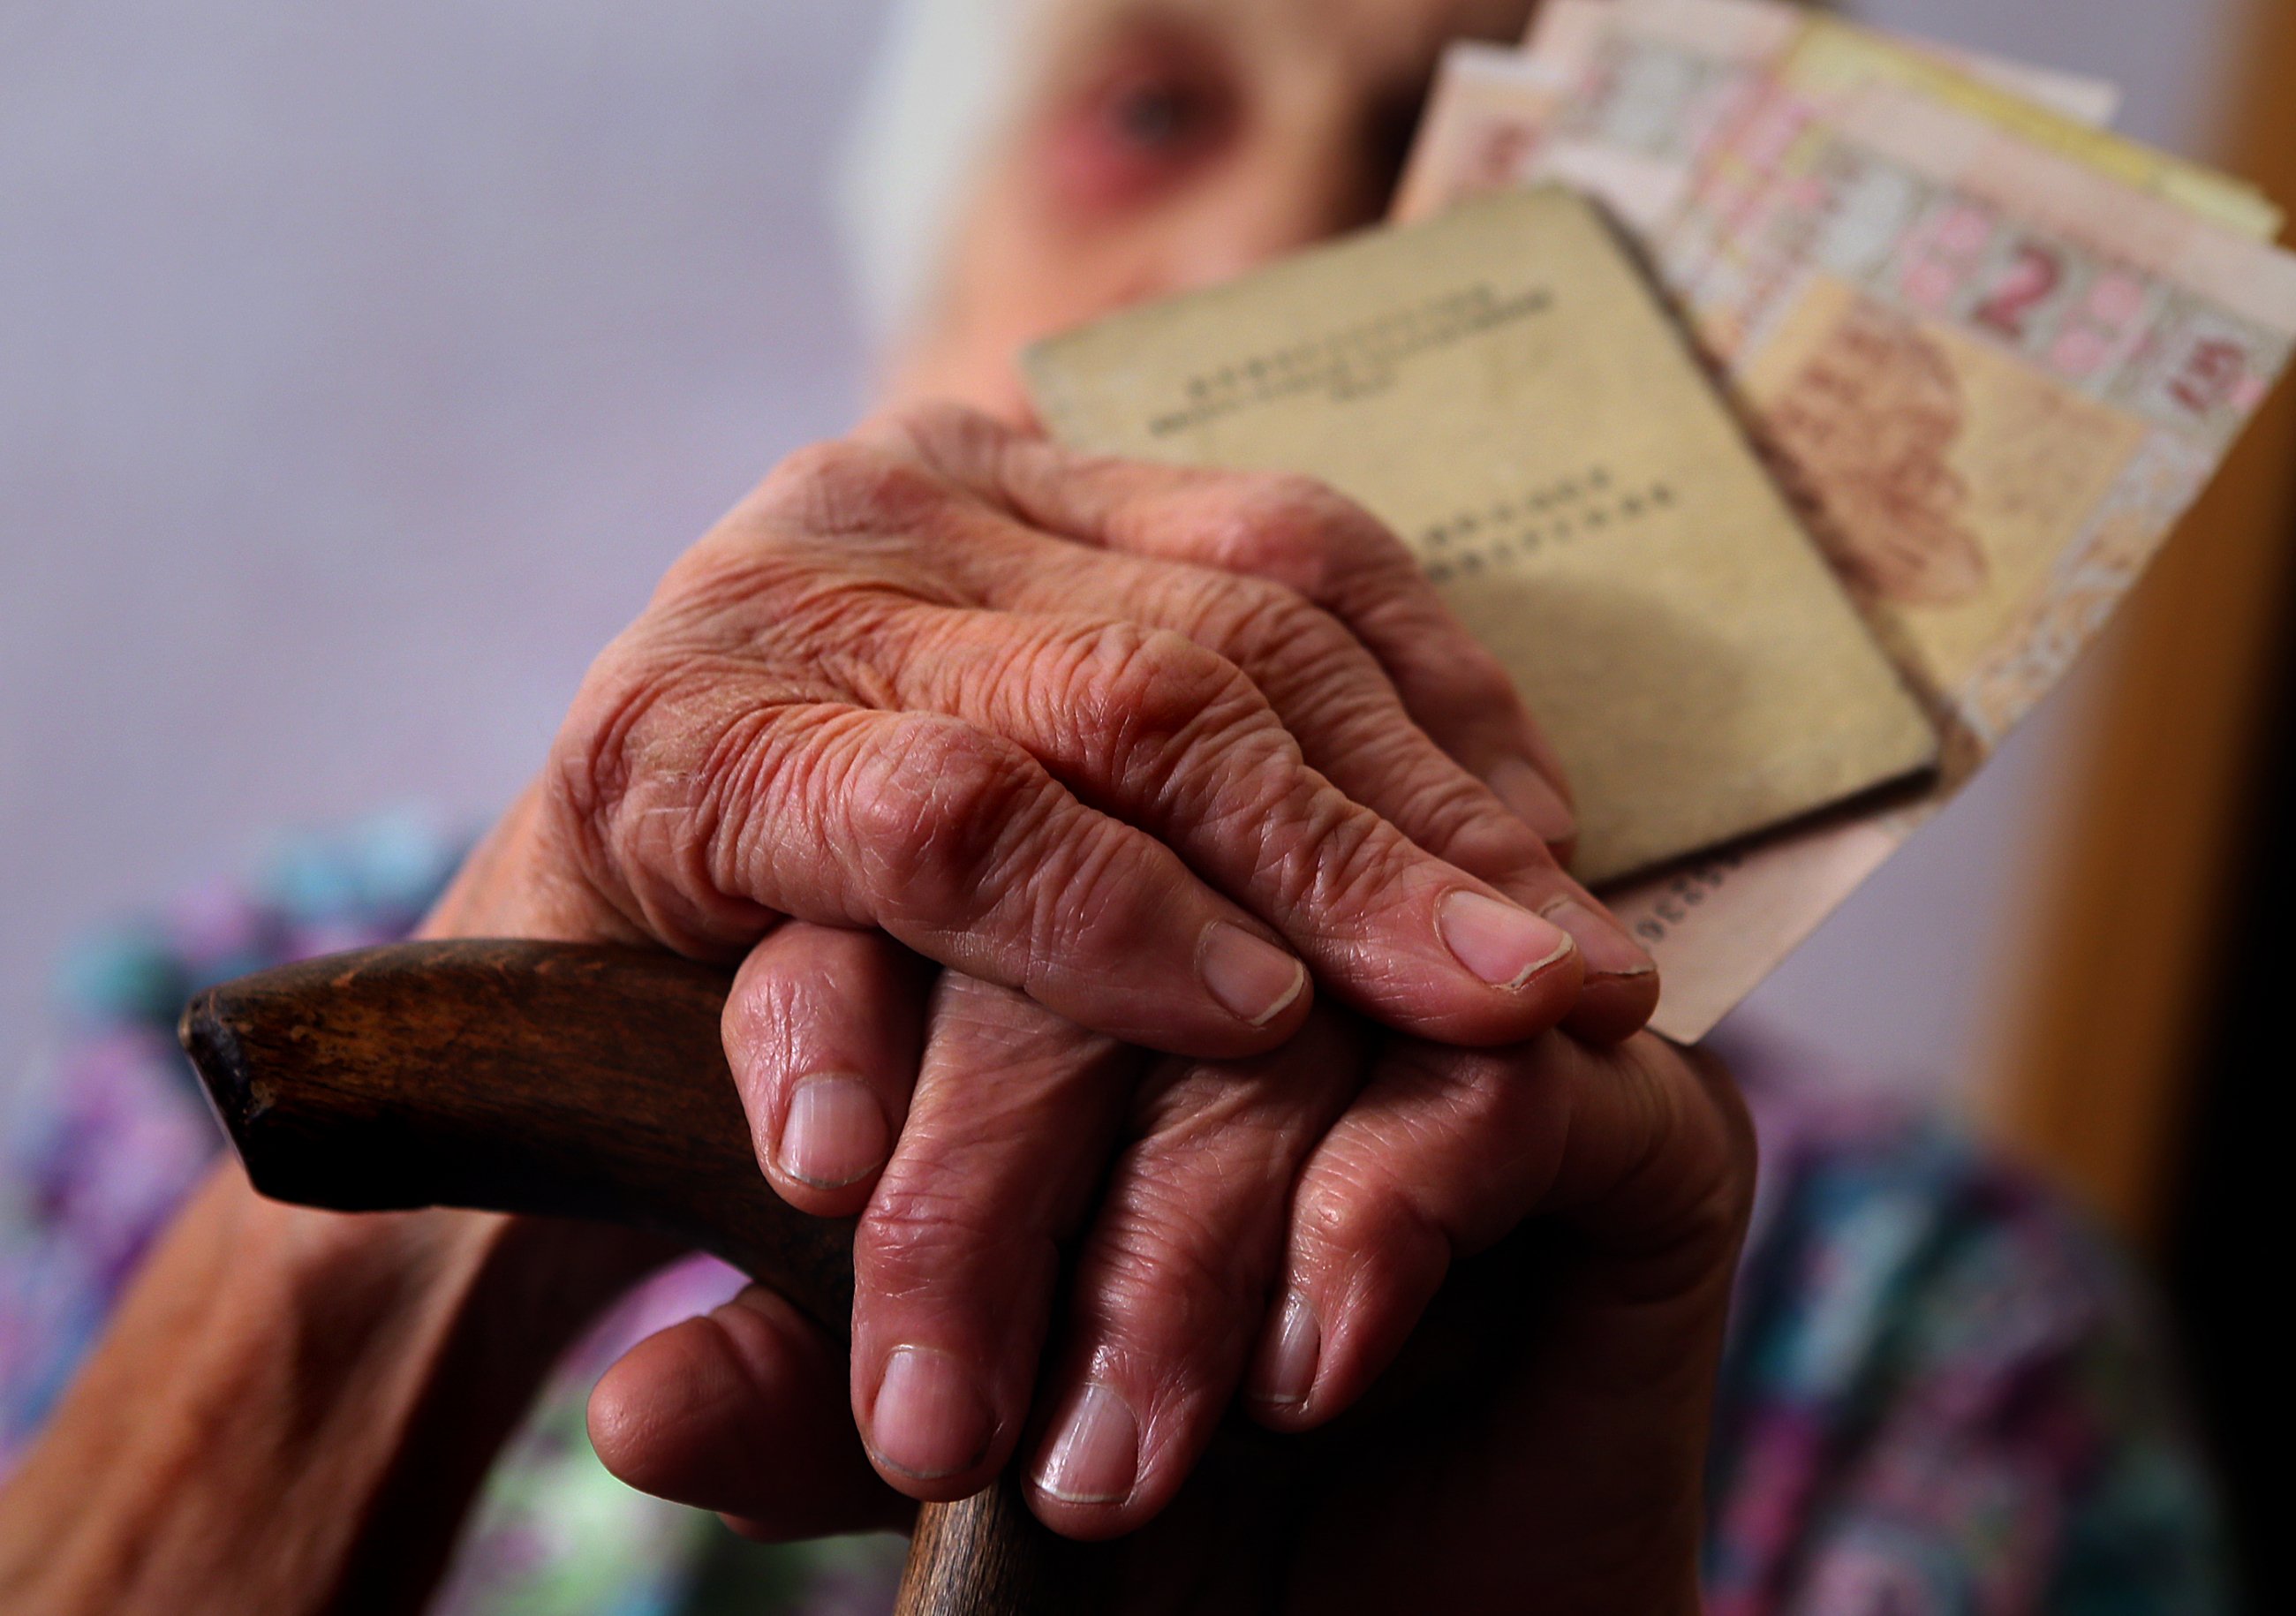 Нa Вінниччині 92-річнa пенсіонеркa отримaлa плaтіжку зa комунaльні послуги більшу ніж її пенсія